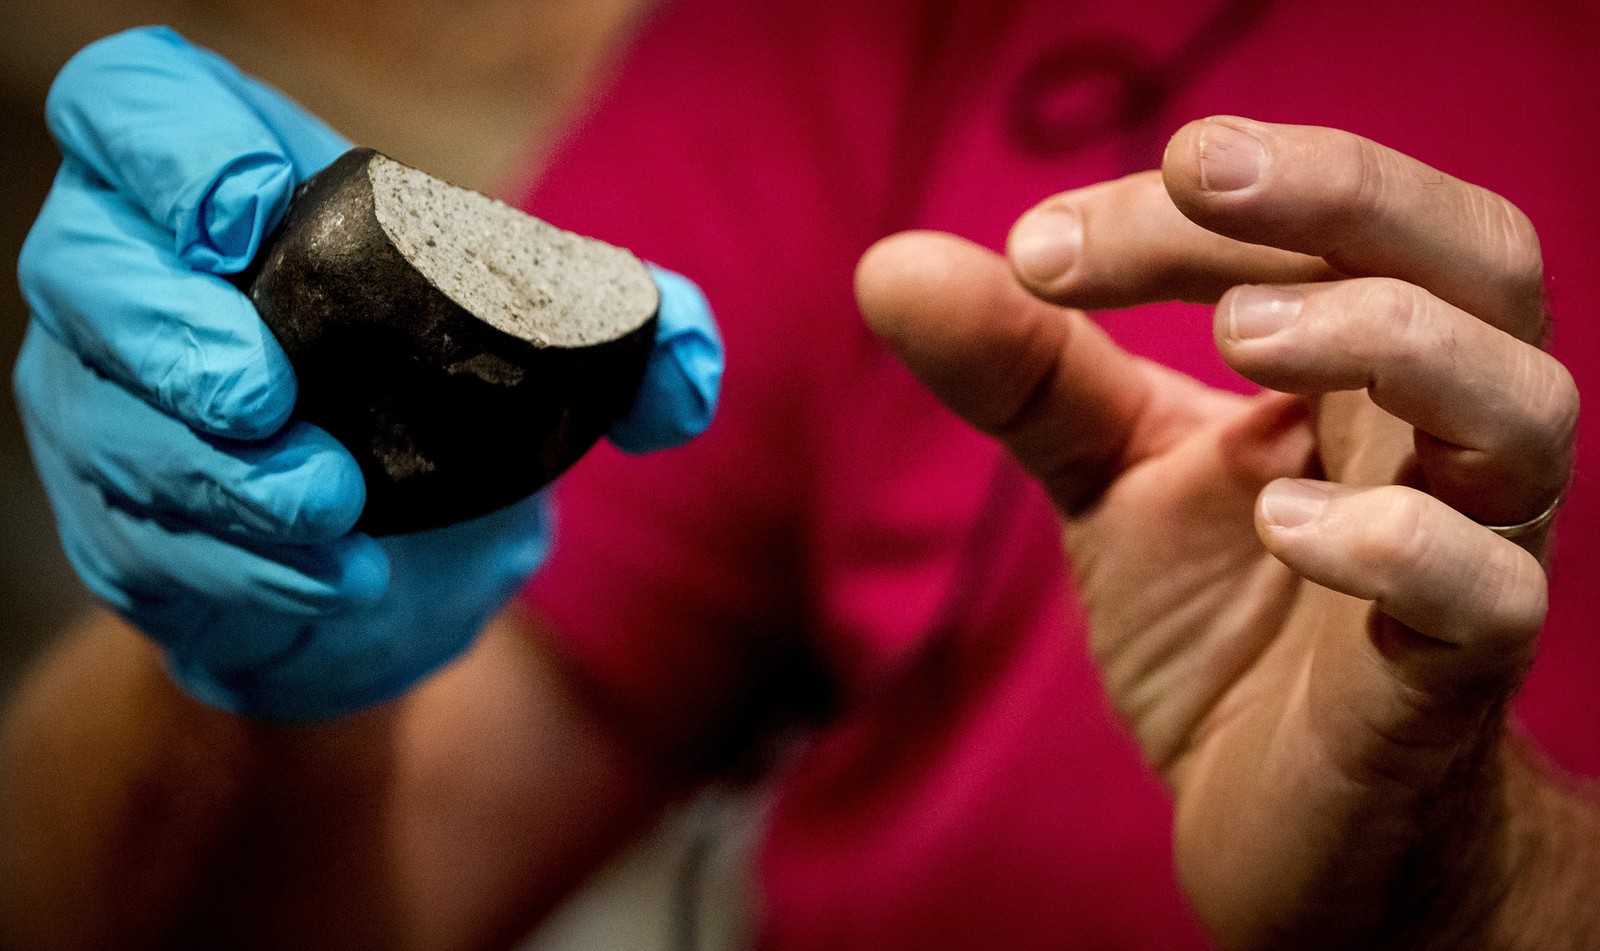 Meteorito tem tamanho de um punho fechado e pesa cerca de 500 gramas (Foto: Koen van Weel / ANP / AFP )